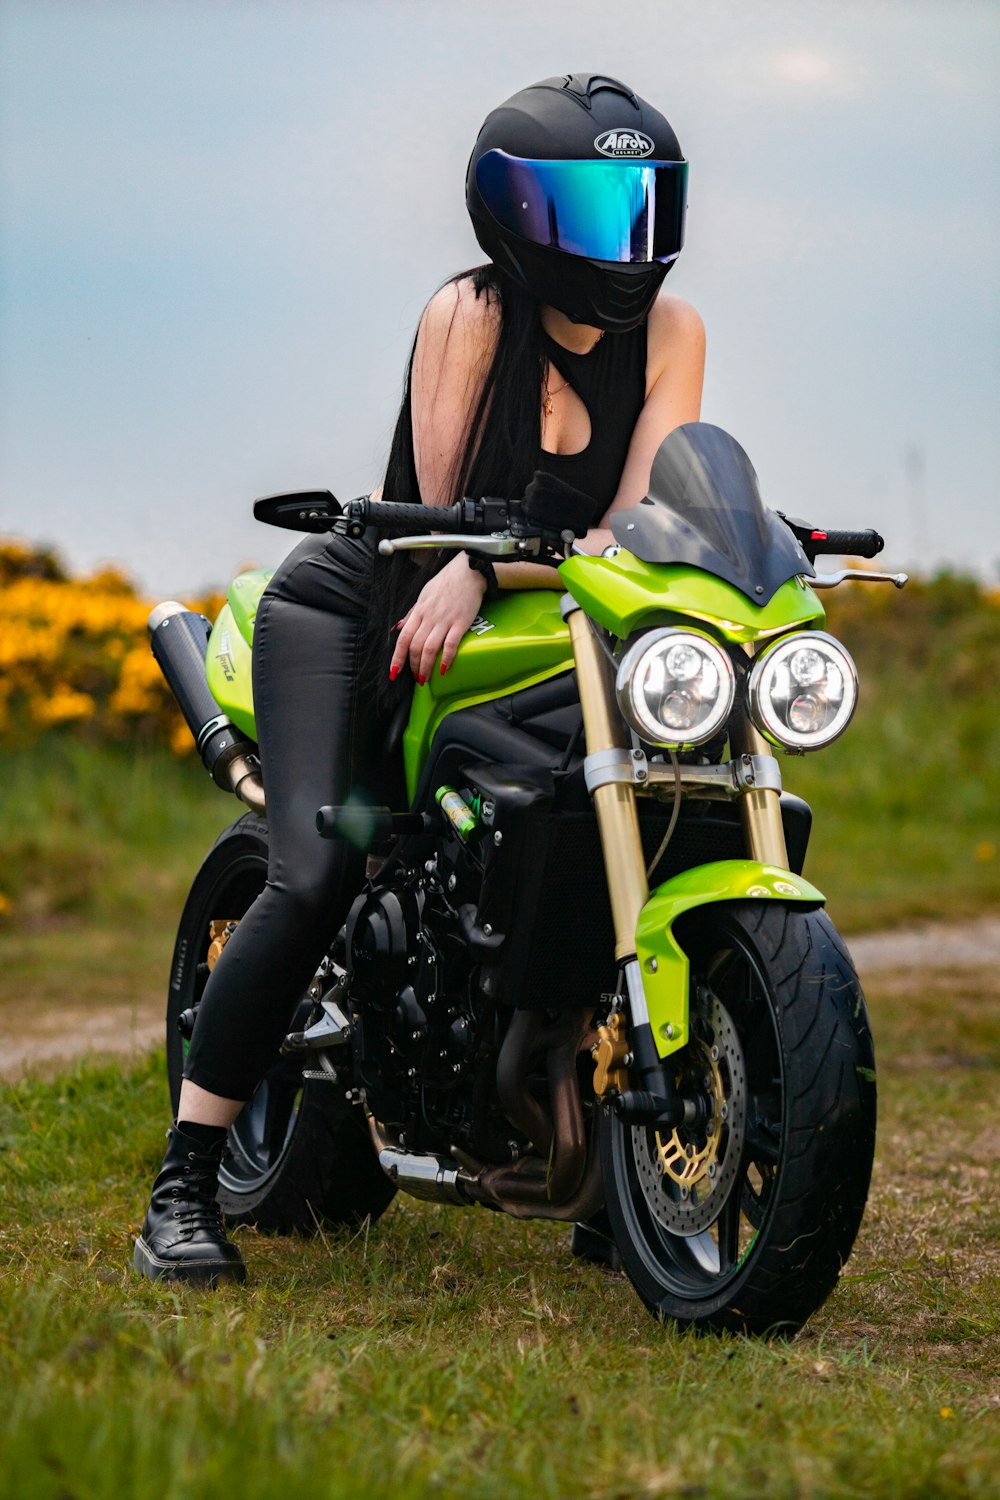 Una mujer sentada encima de una motocicleta verde